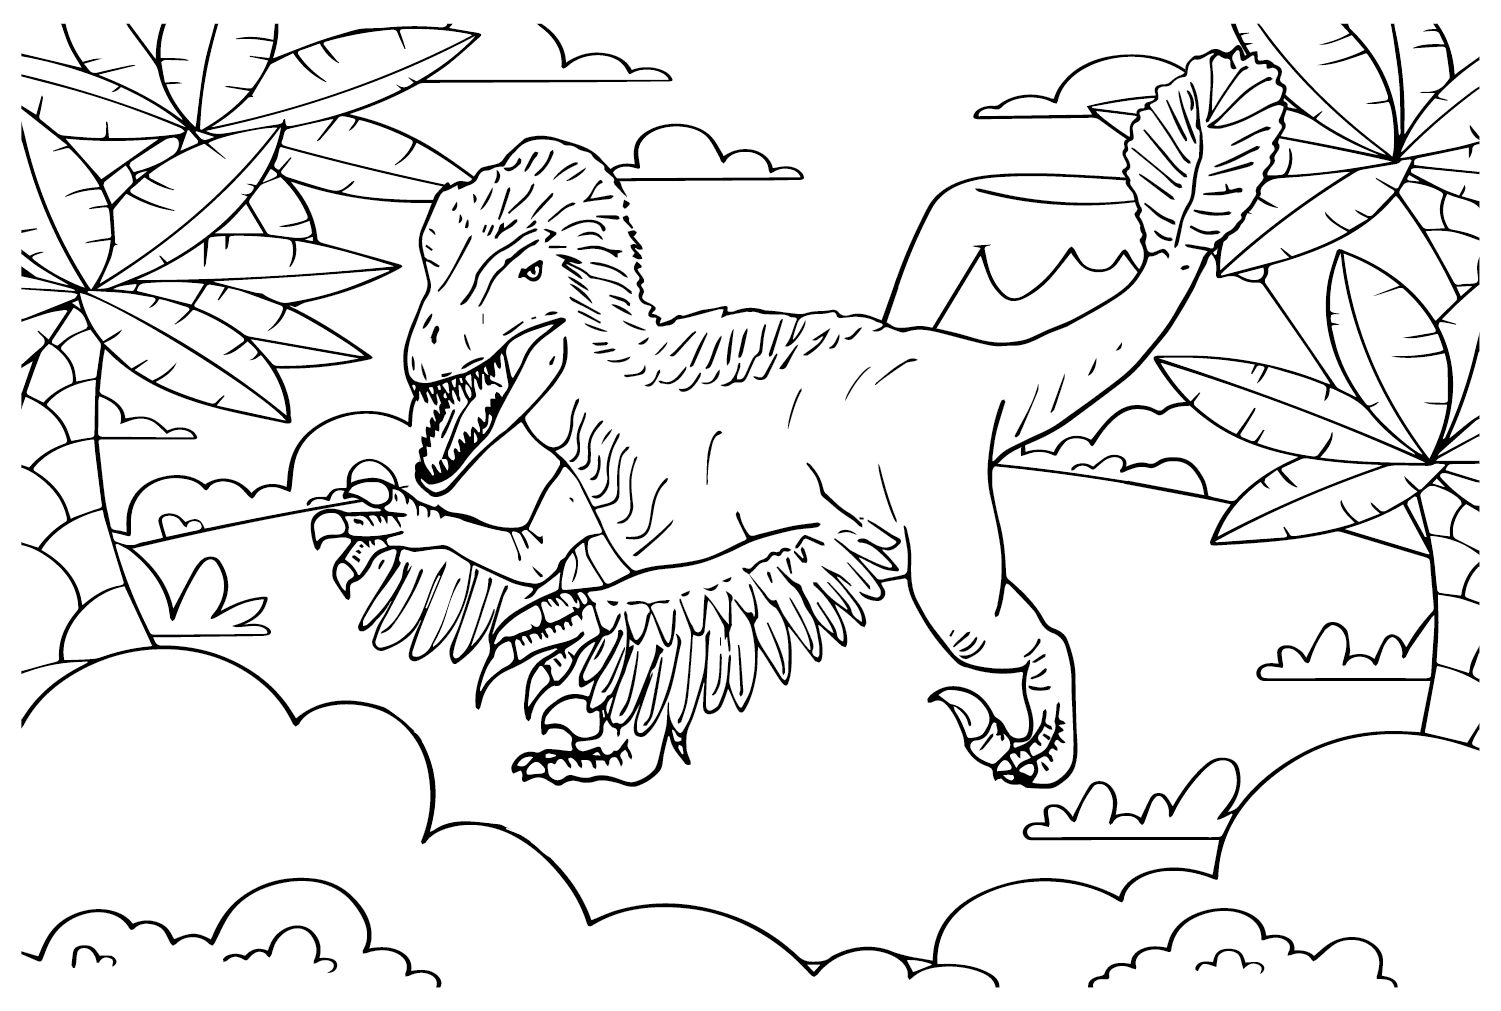 Imagens de uma página para colorir de Utahraptor de Utahraptor